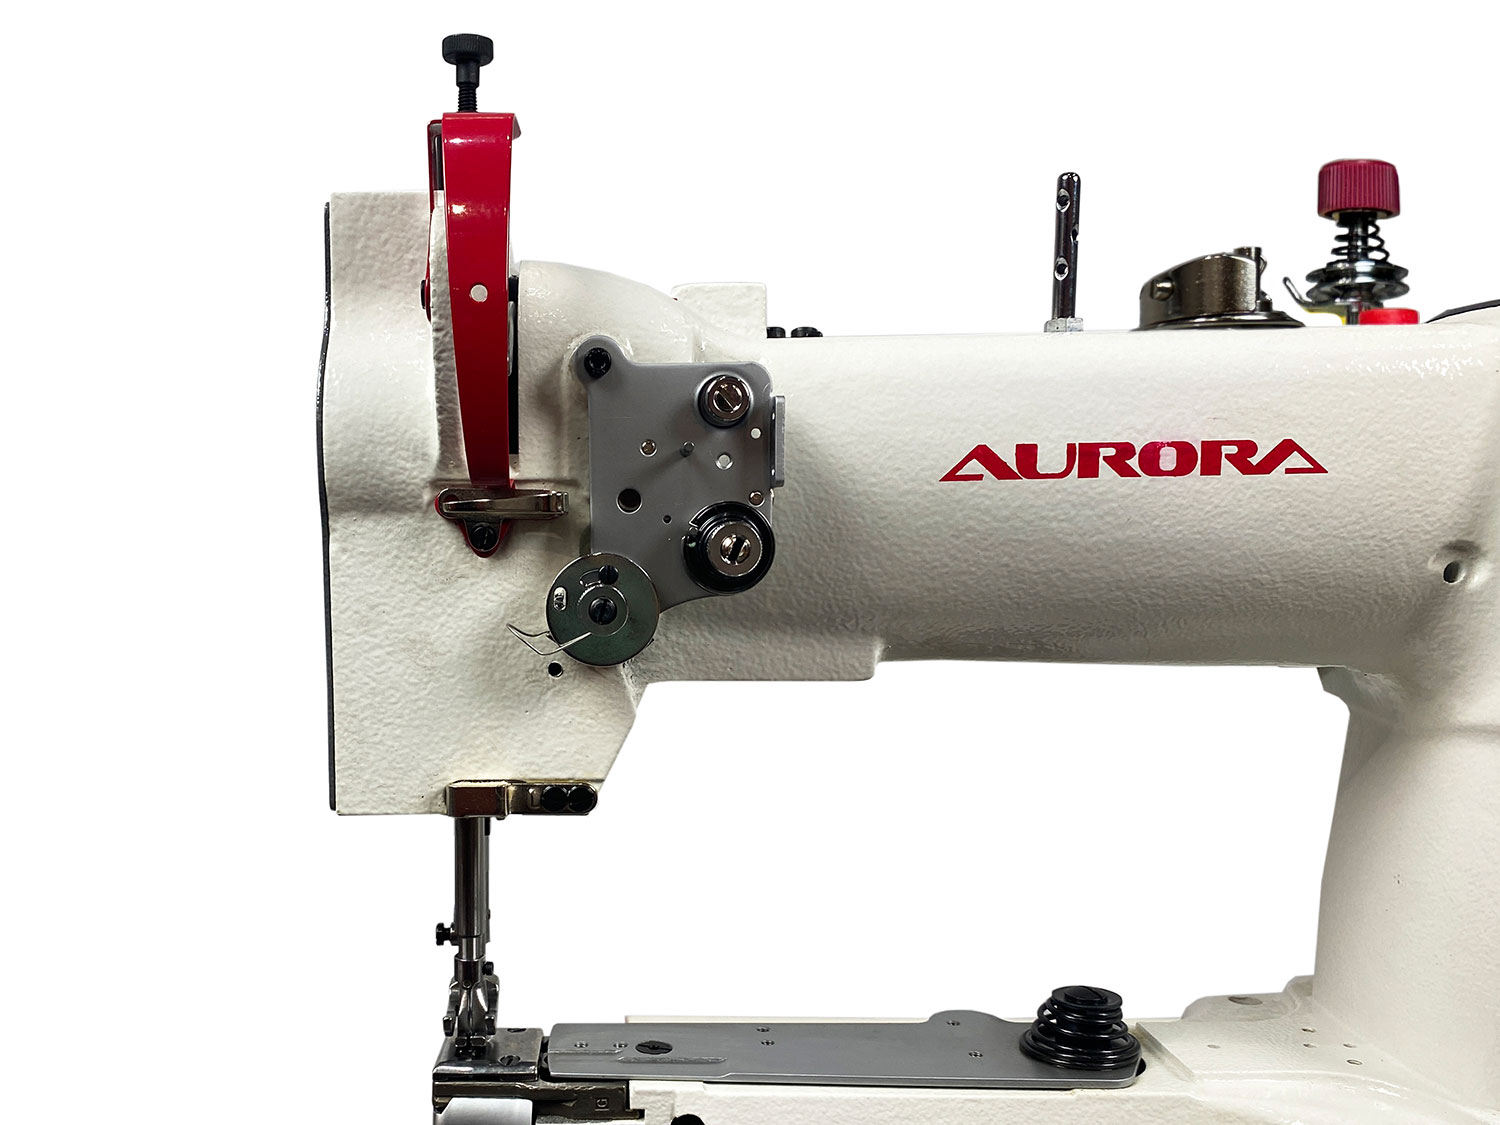 Рукавная швейная машина Aurora A-335